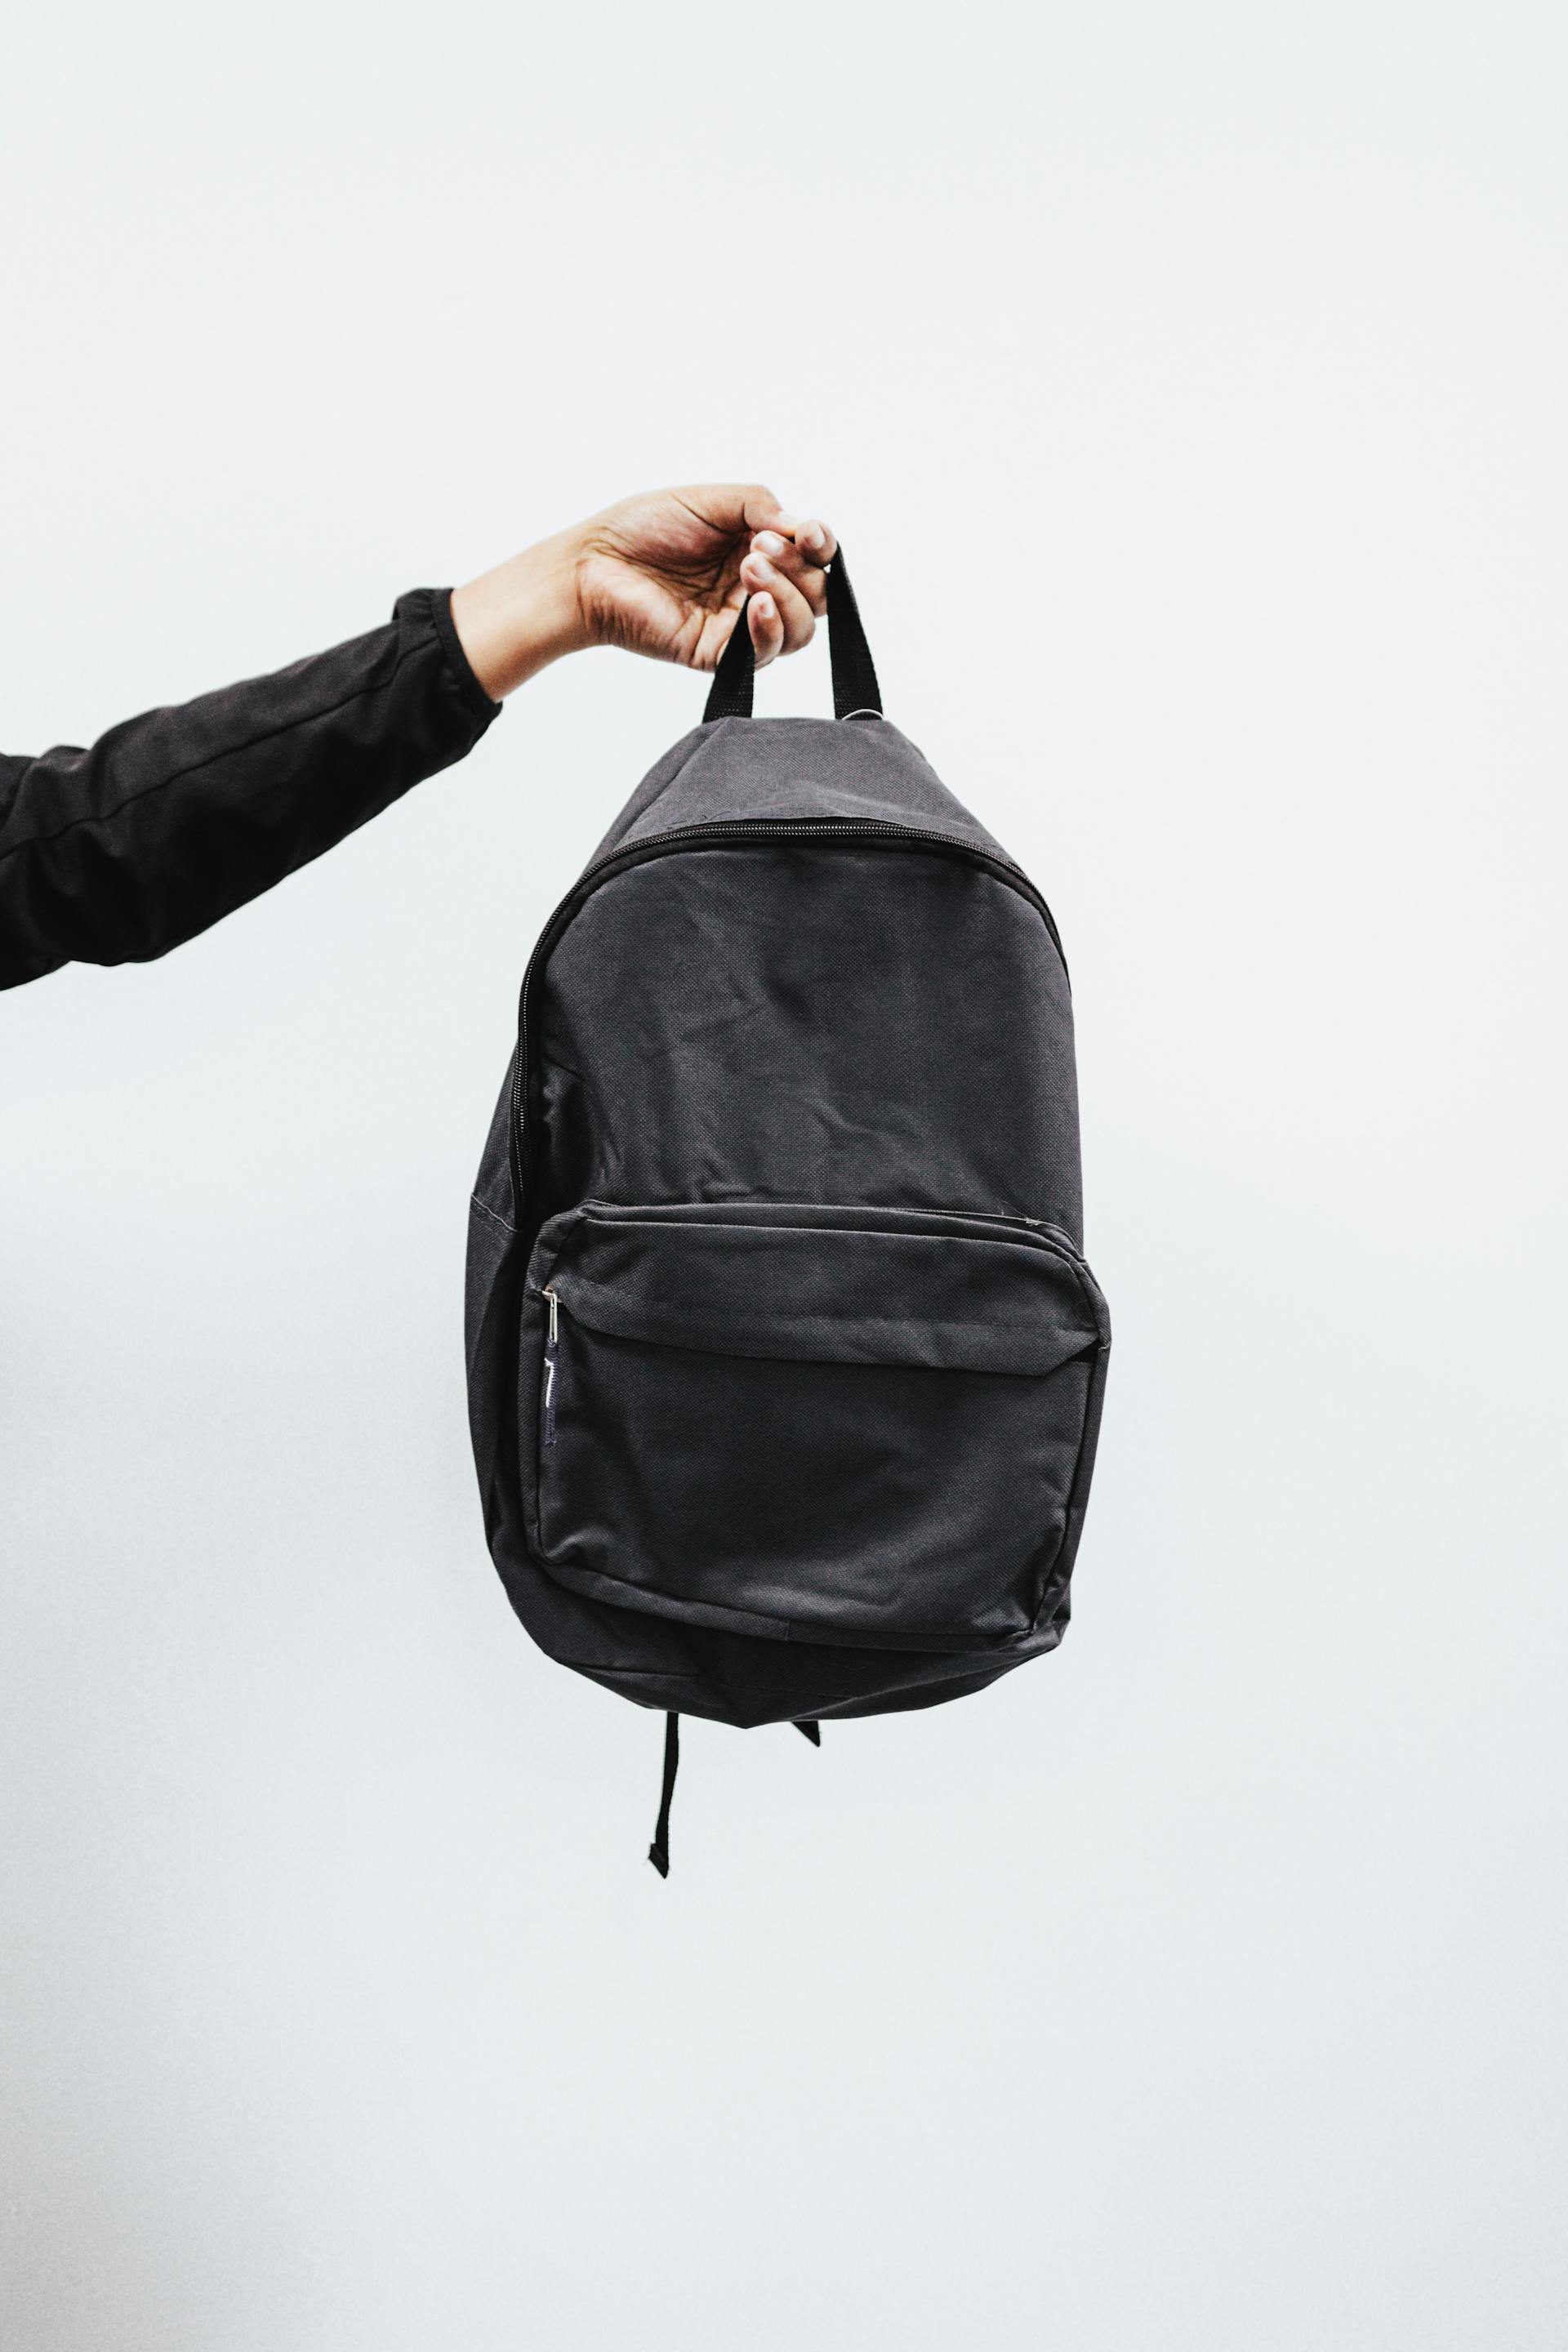 Una persona con una mochila negra en la mano | Fuente: Pexels